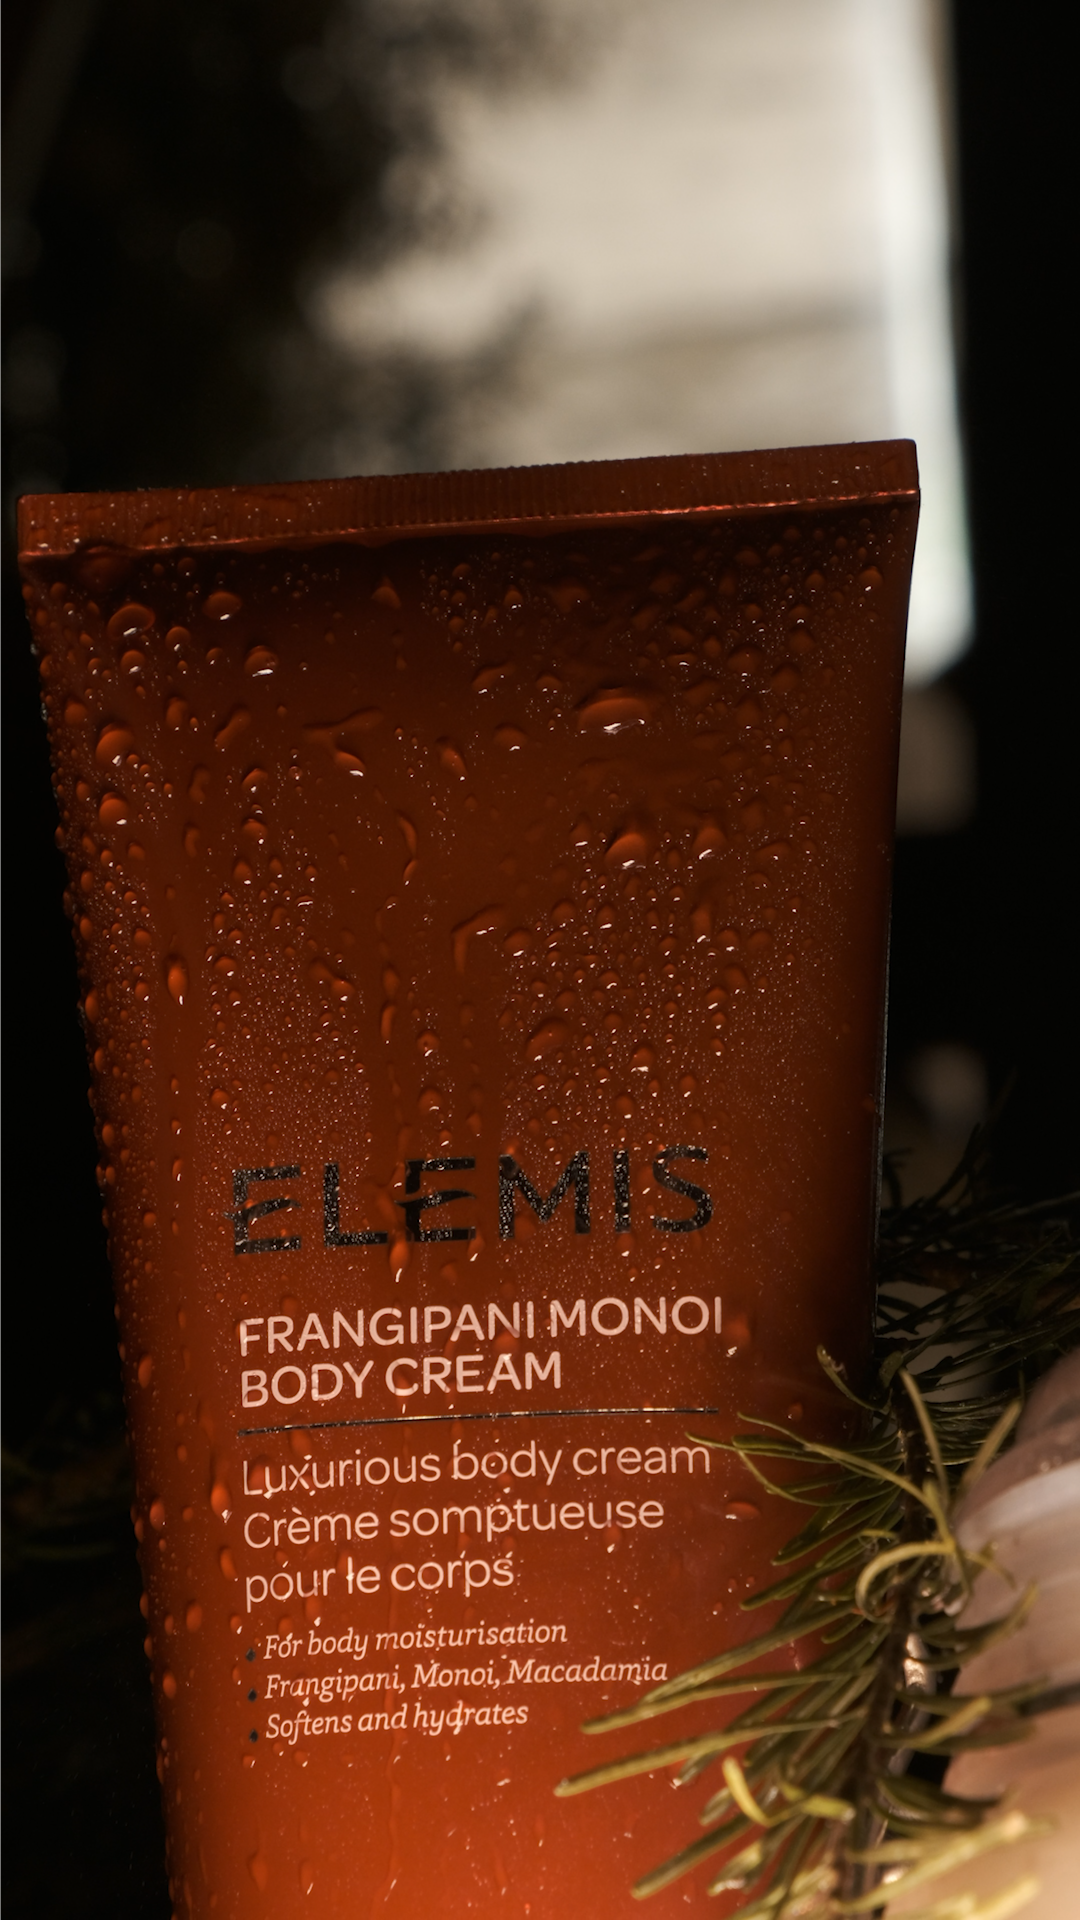 Комплекс Siberia и бренд Elemis запускают авторскую программу женского банного спа (фото 6)